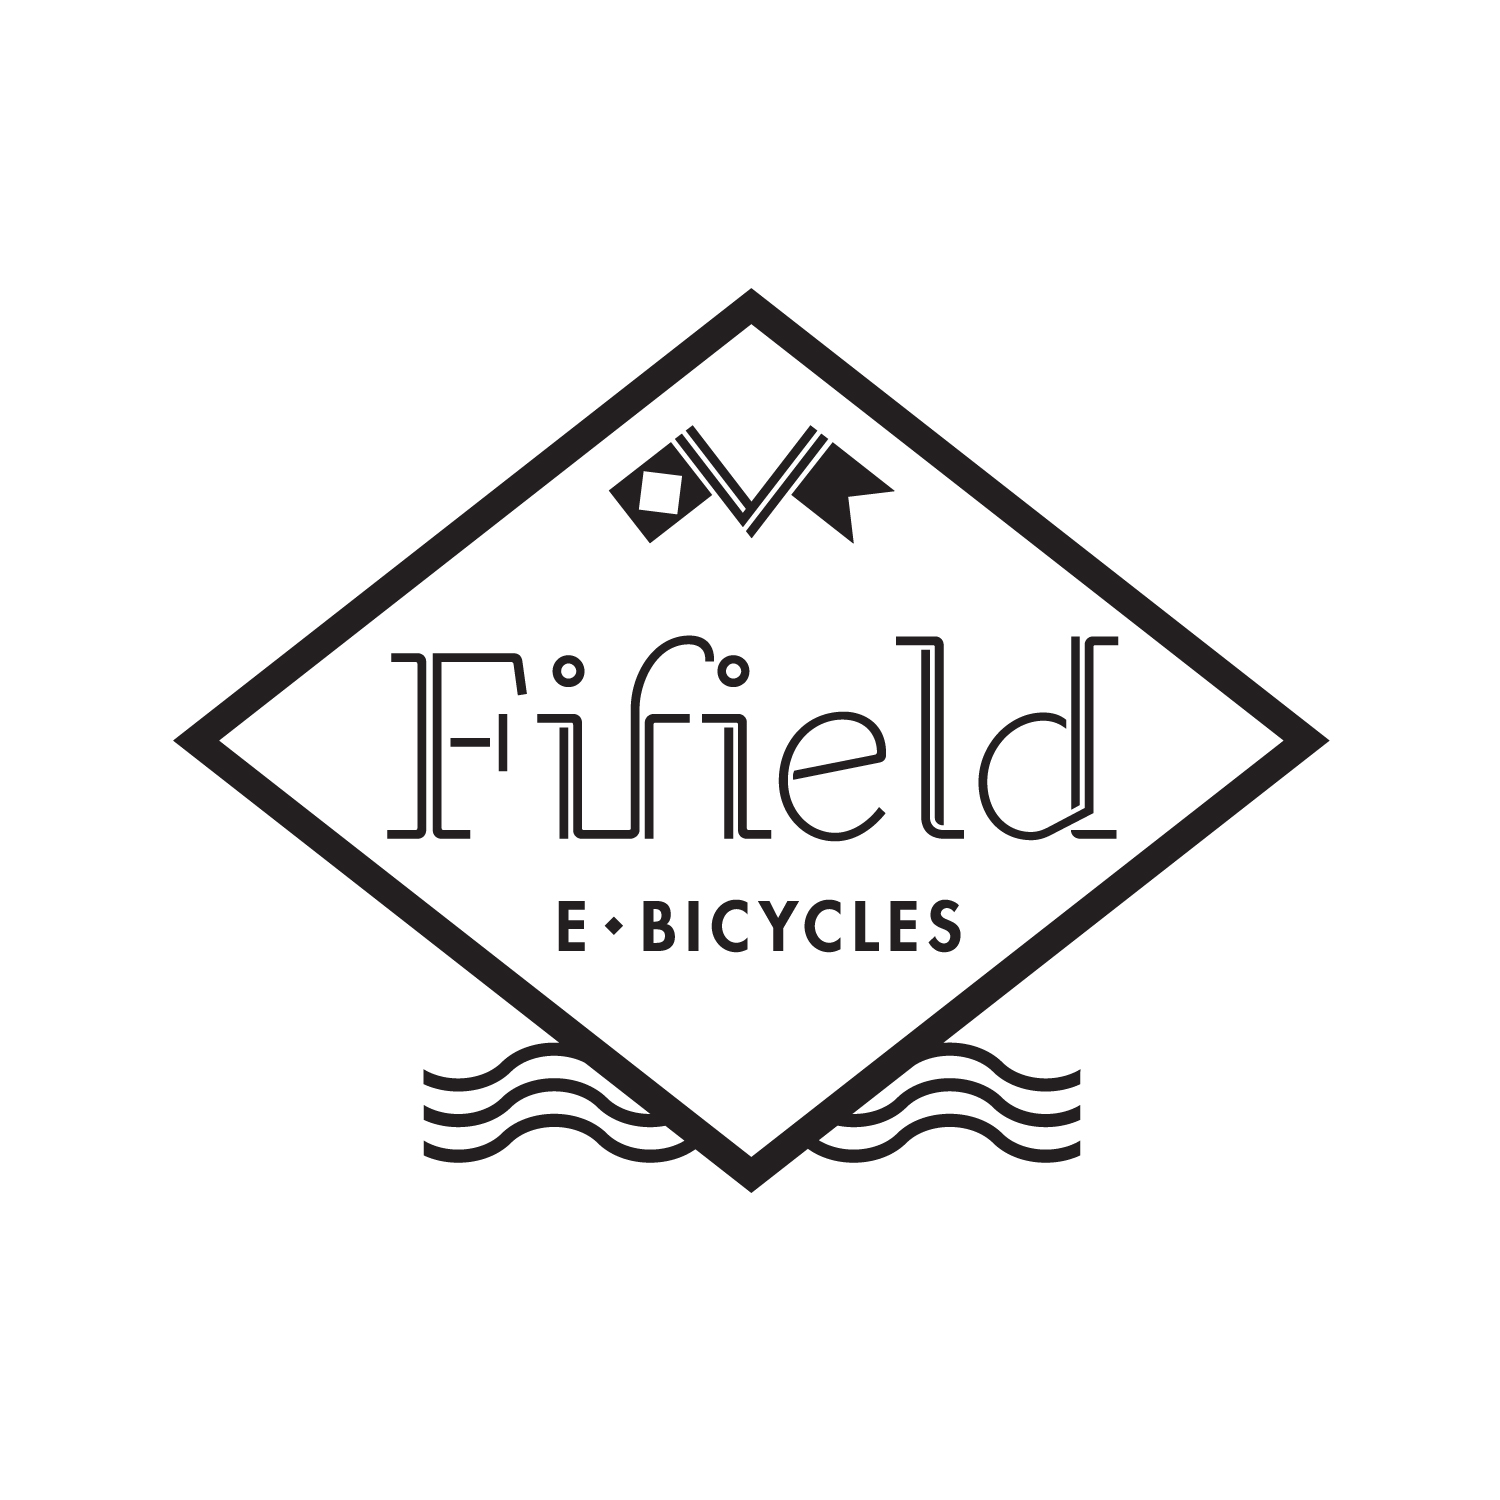 Fifield logo